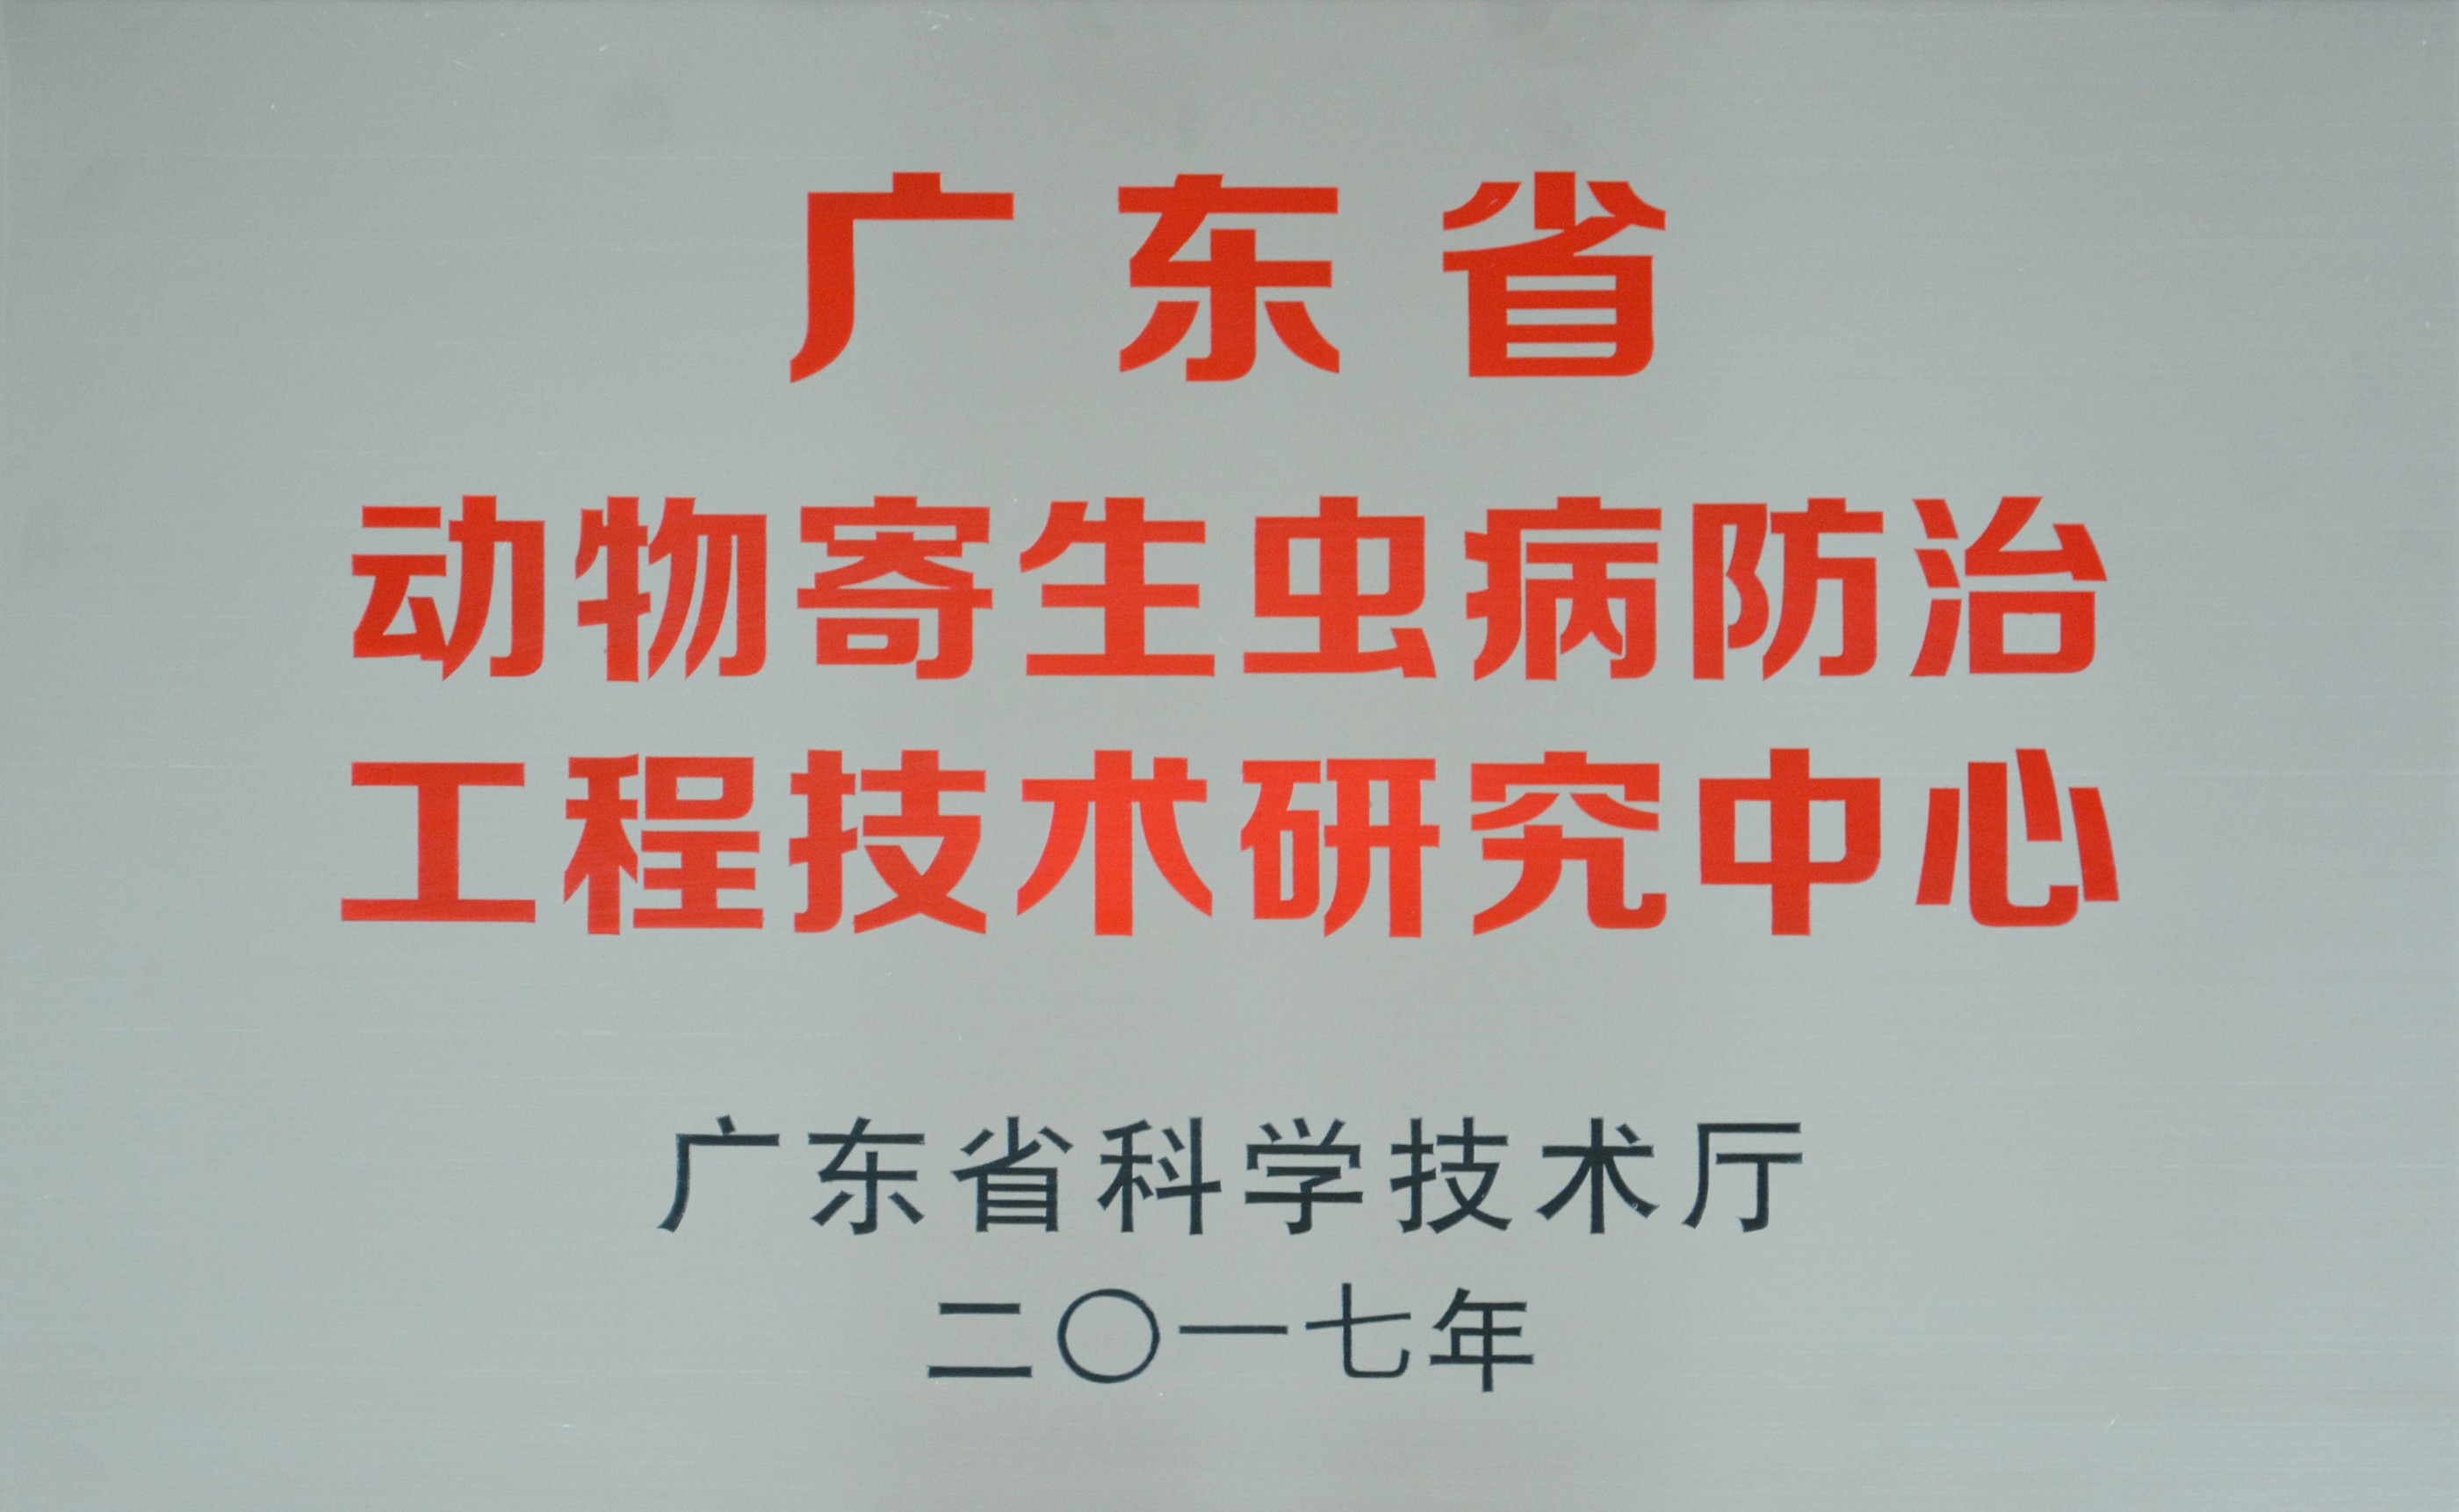 广东省动物寄生虫病防治工程技术研究中心